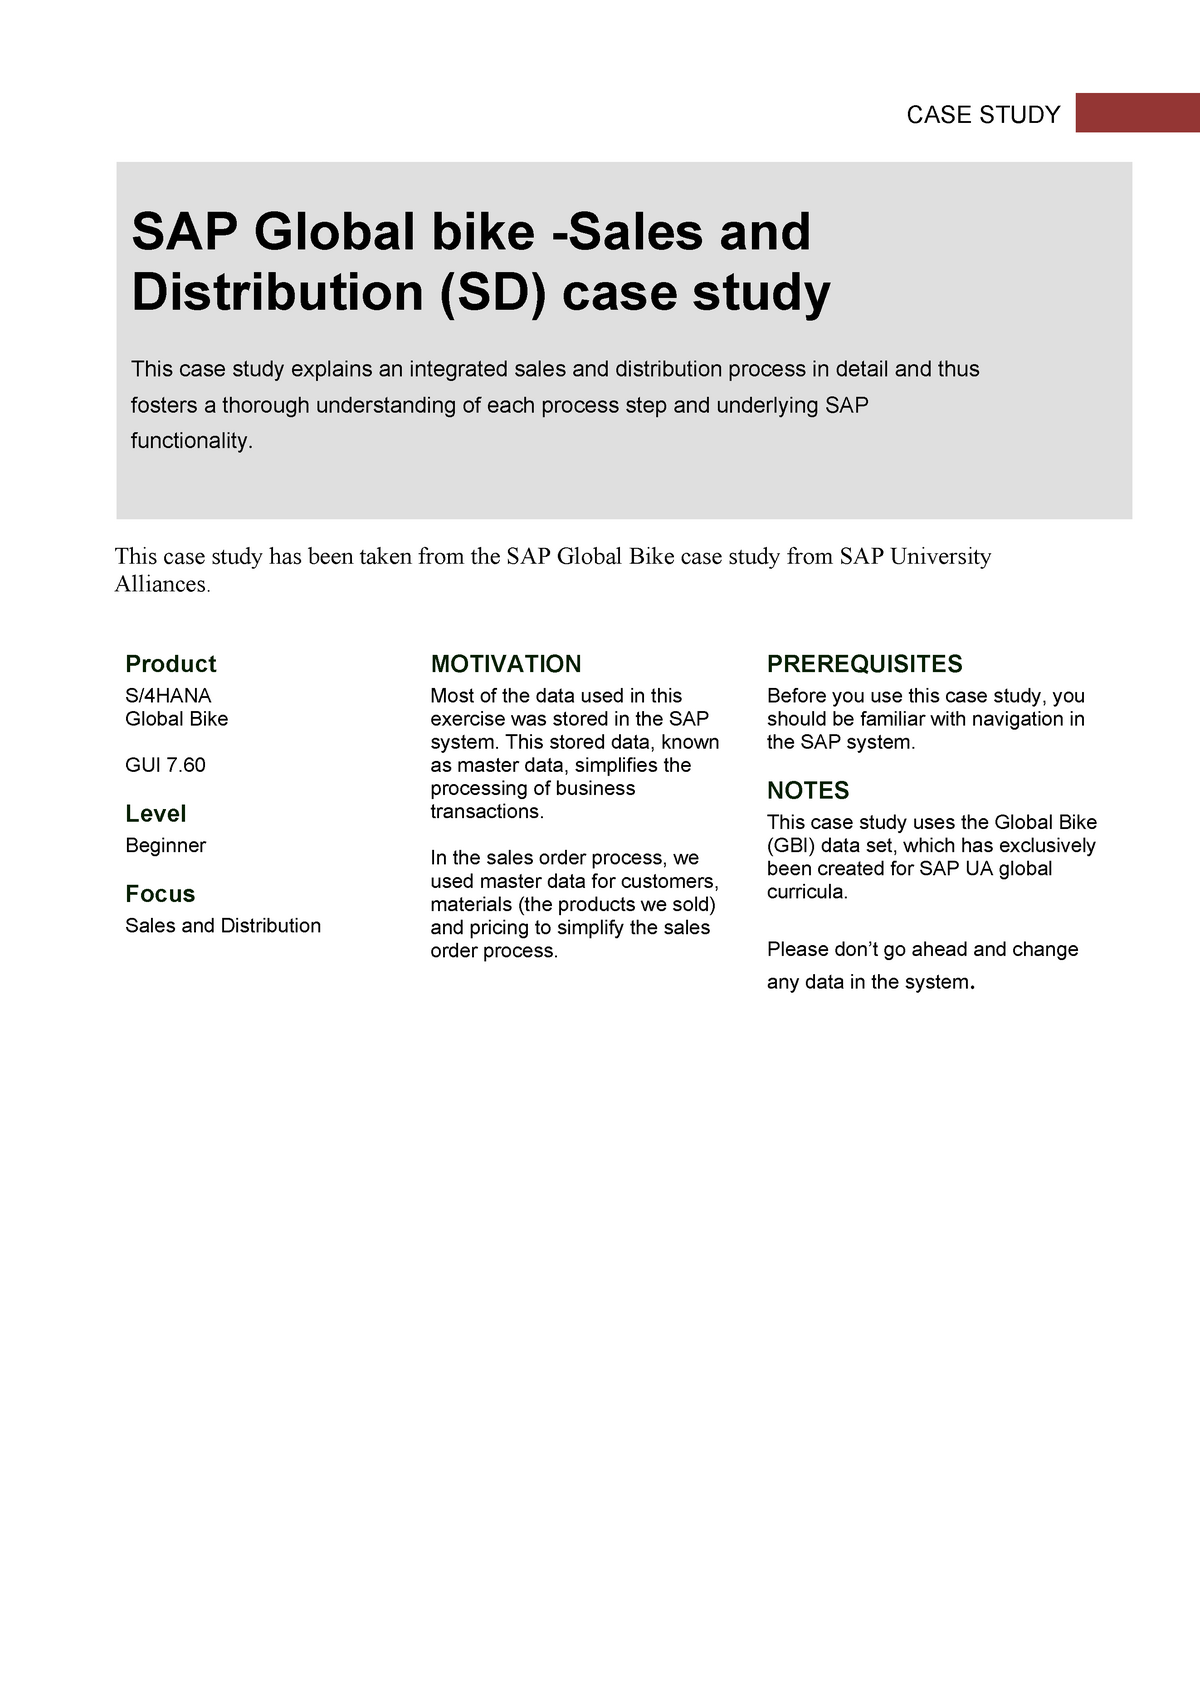 sap case study pdf